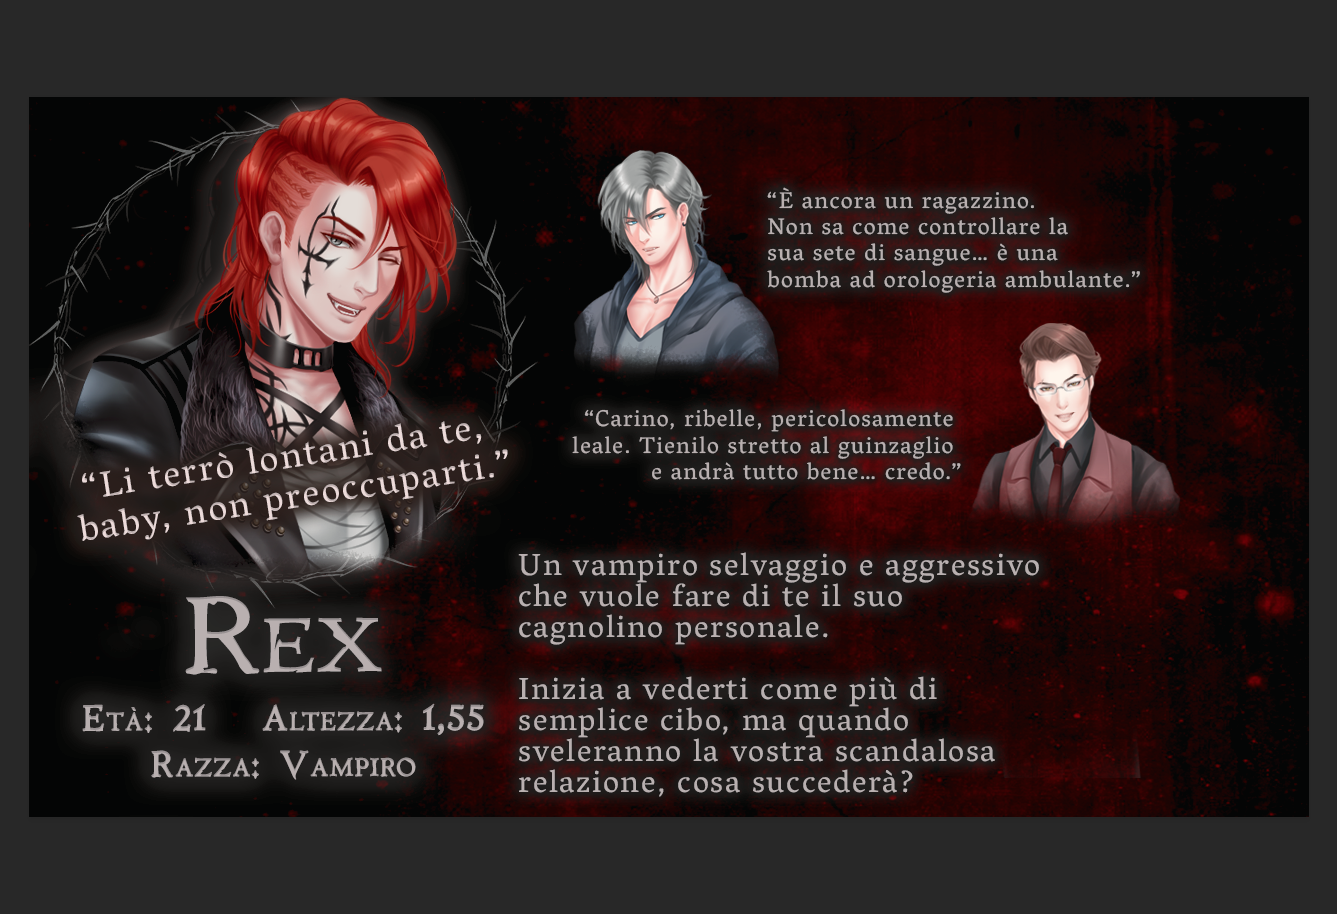 Rex information card in Italian